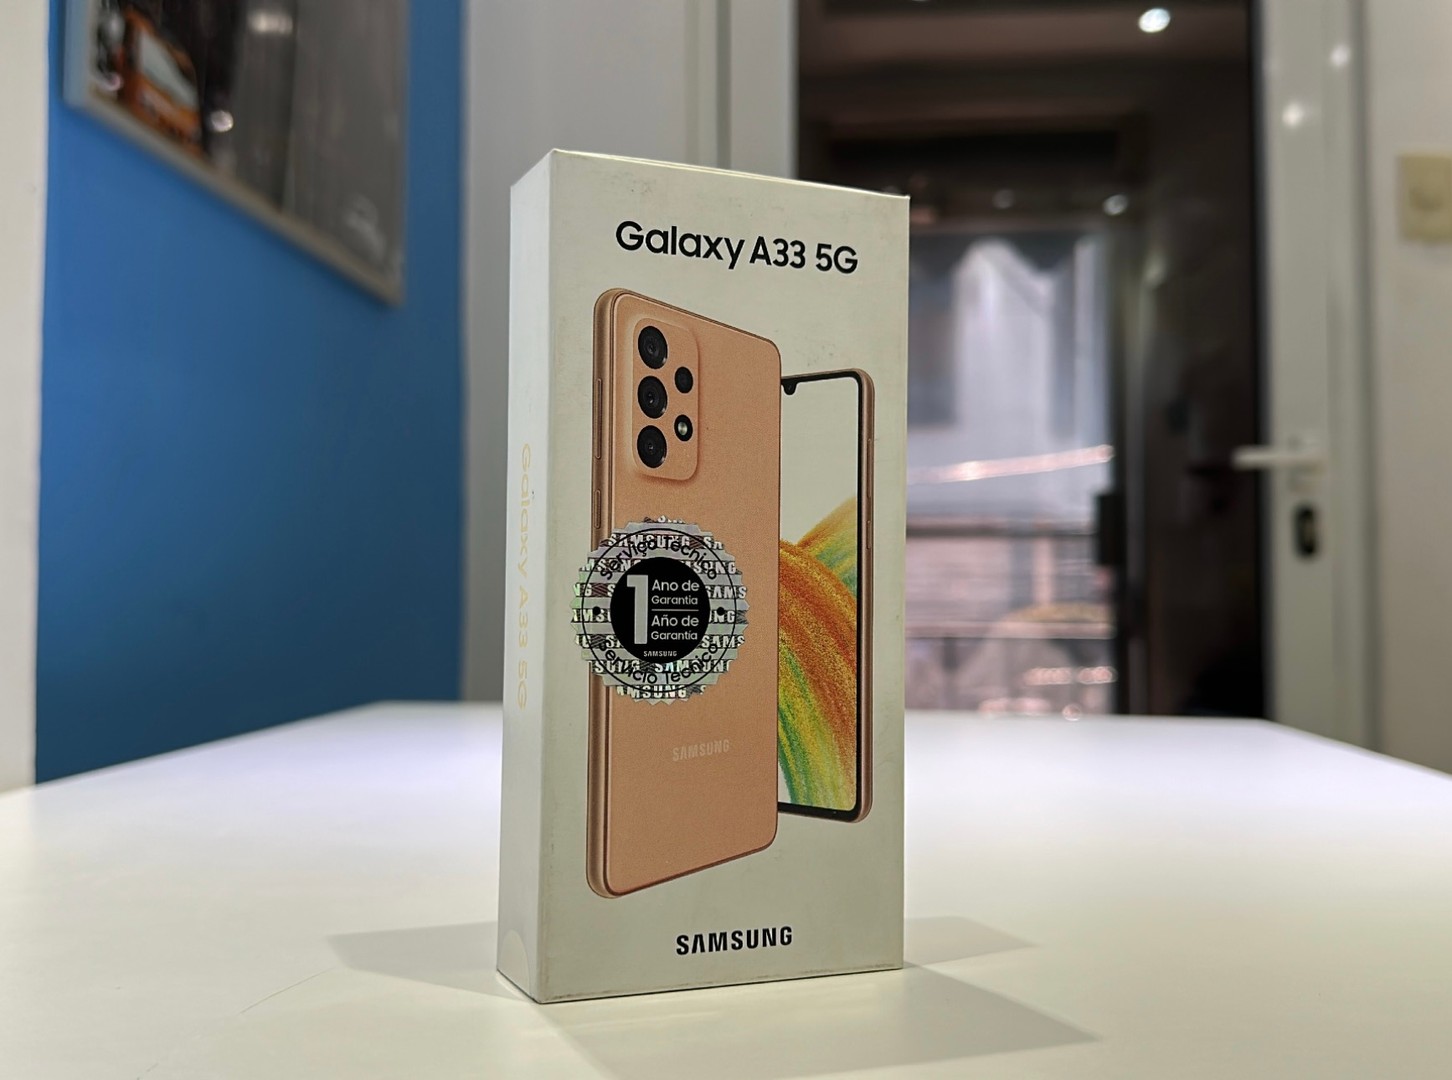 celulares y tabletas - Vendo Samsung Galaxy A33 5G 128GB Nuevos, Desbloqueados, Garantía, $ 15,500 NEG